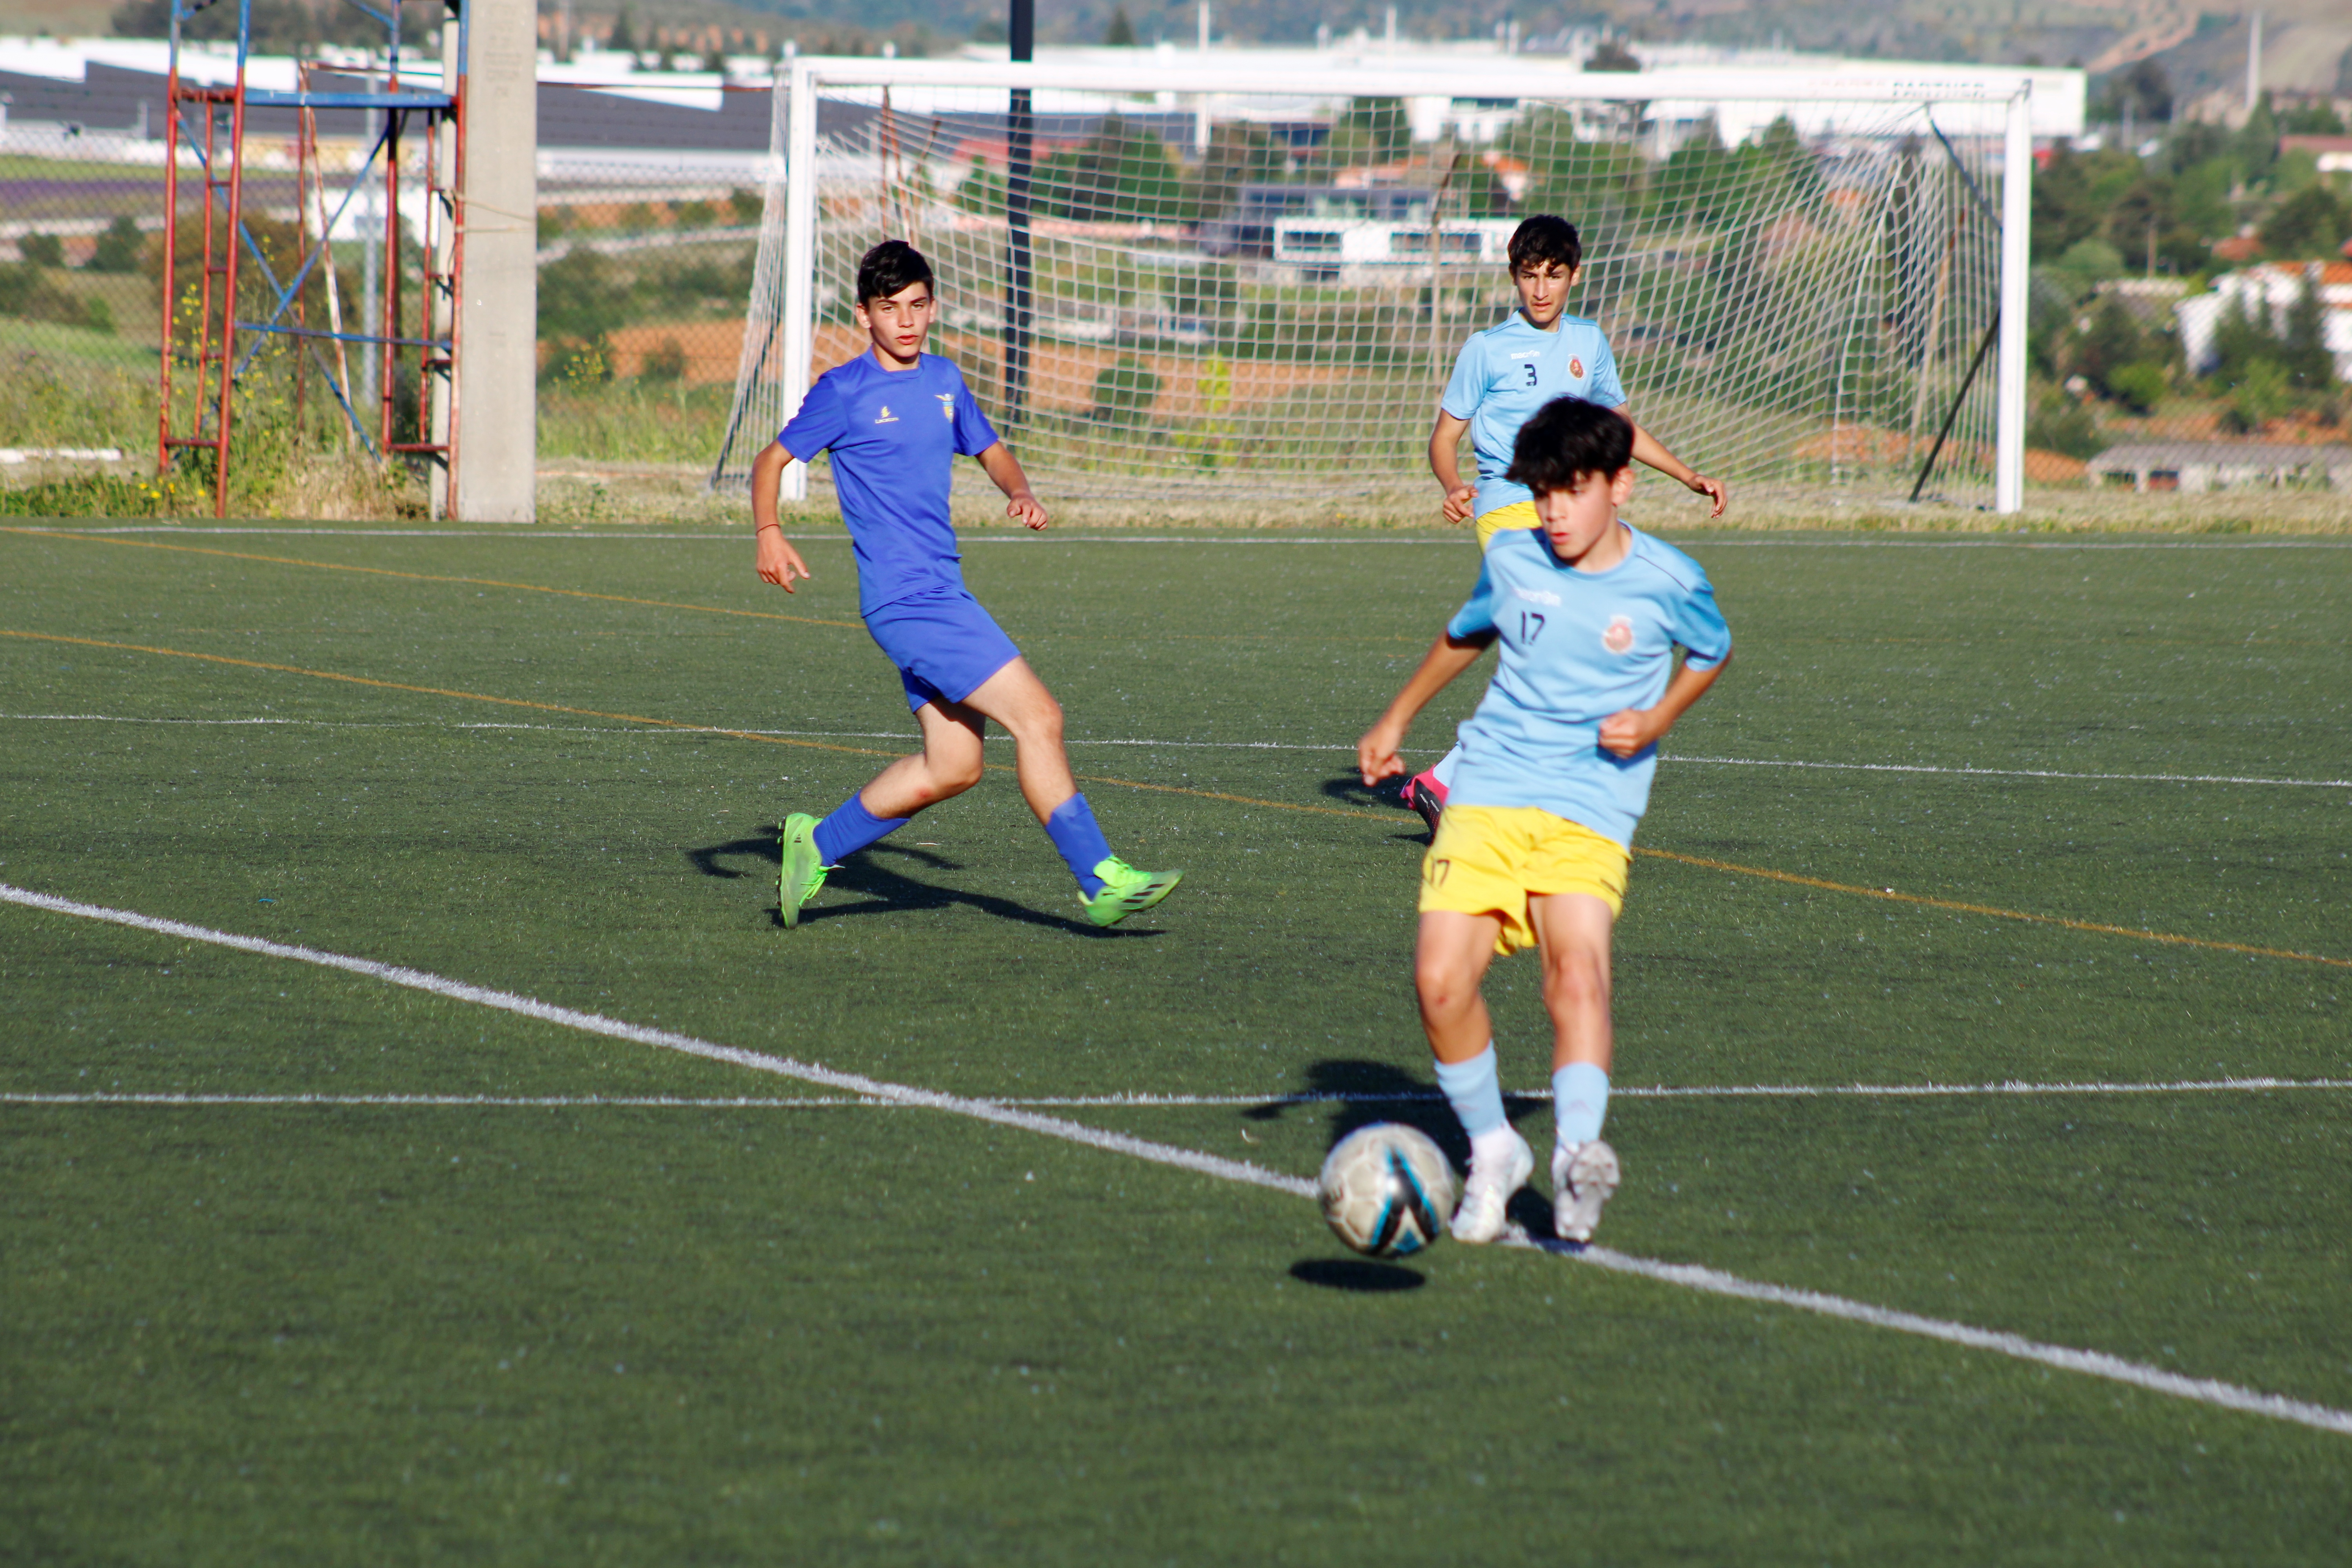 Convocatória para os torneios de futebol sub-14 em Vila Real e Guarda 